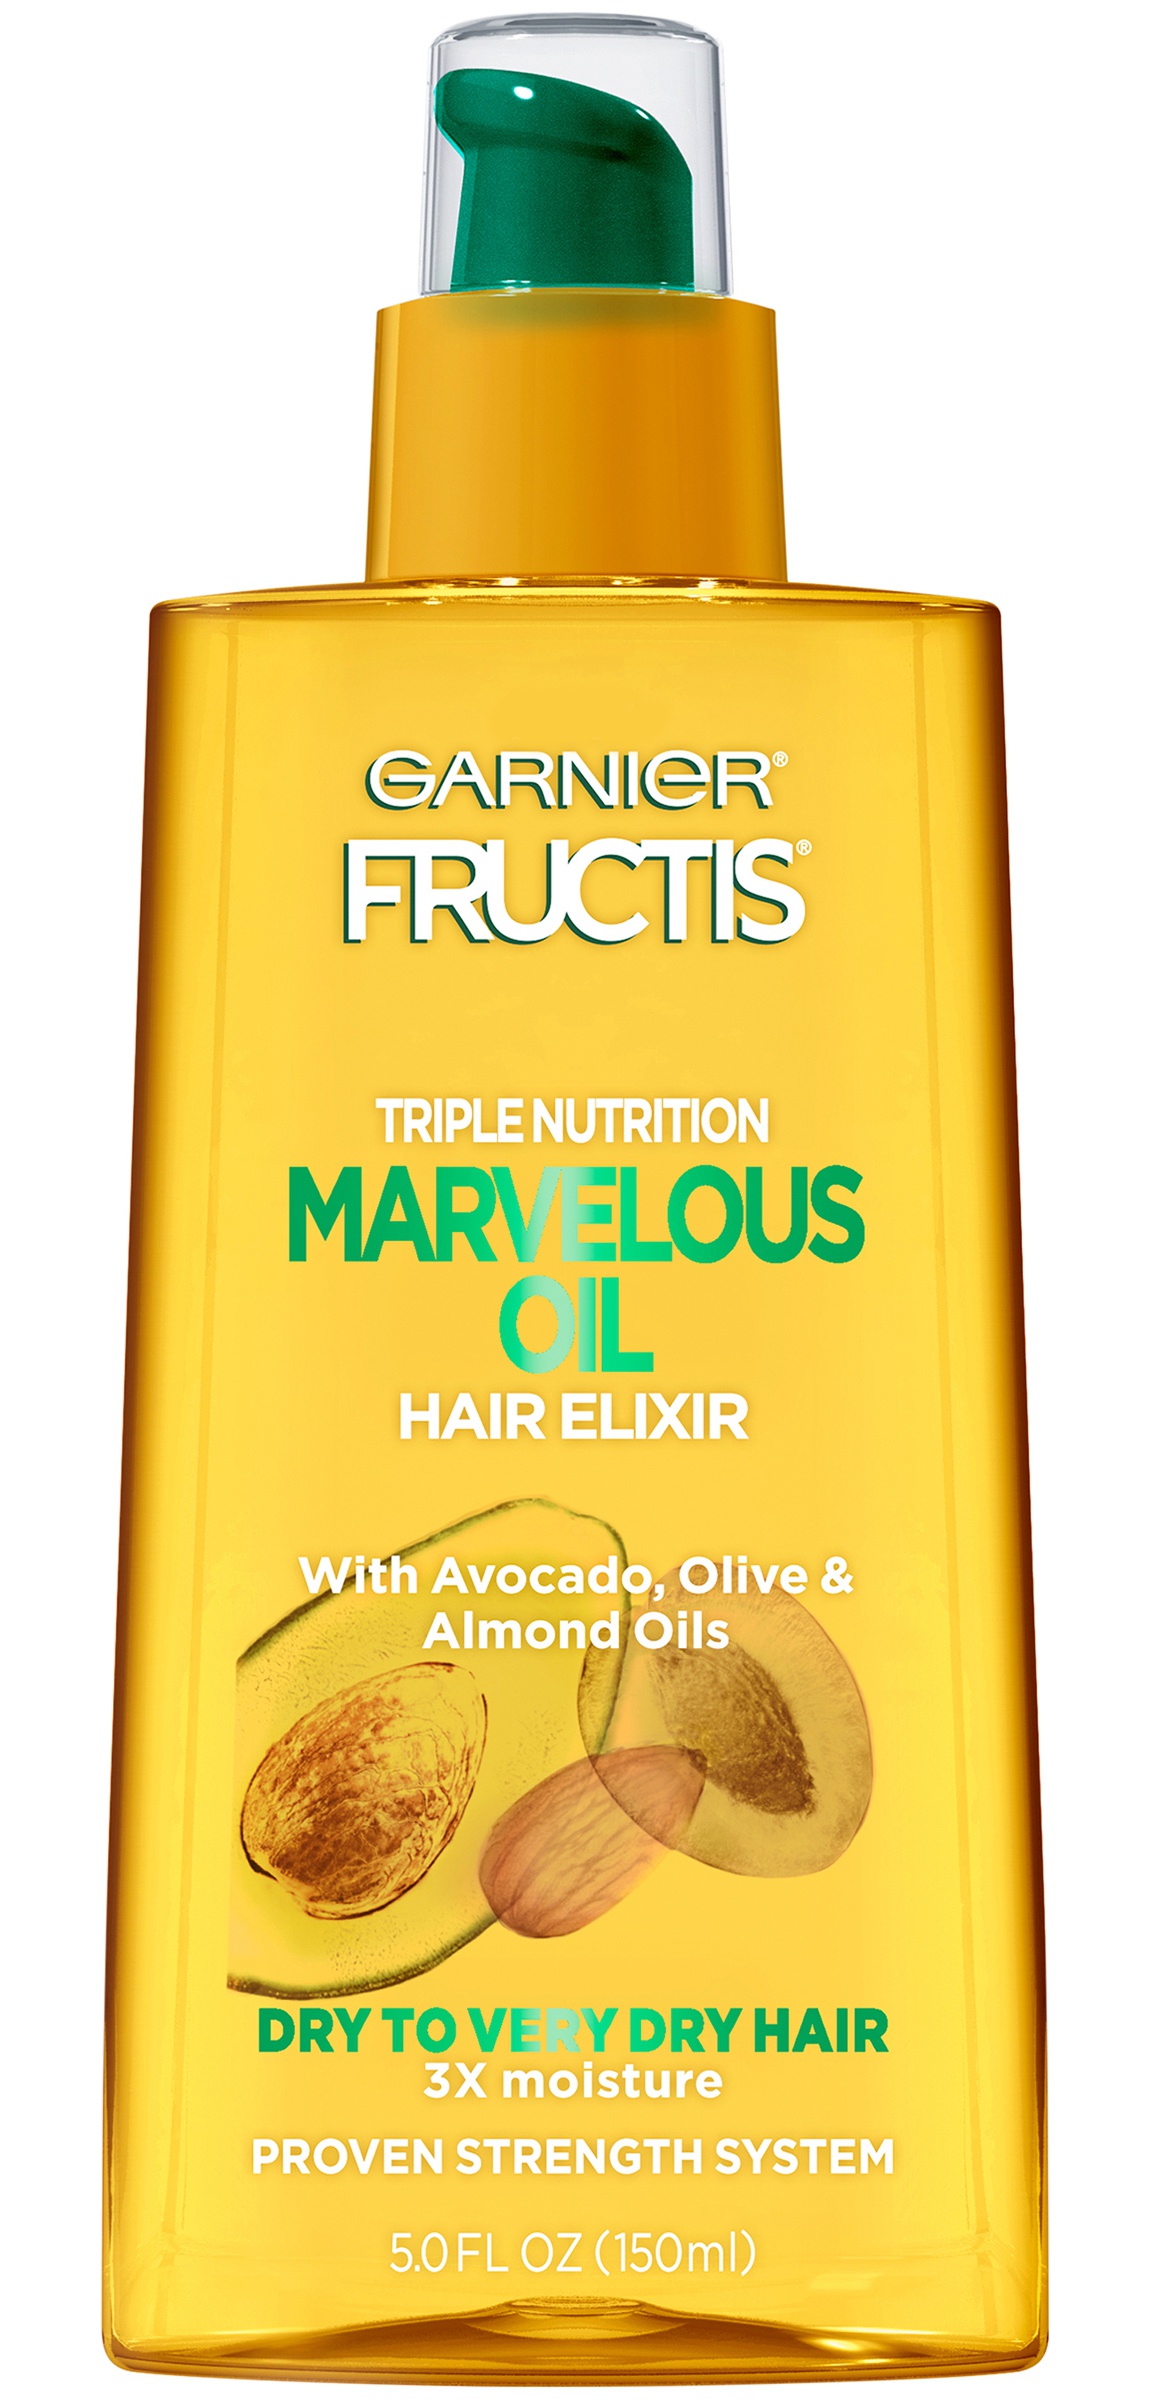 Масло для волос fructis. Garnier Fructis Triple Nutrition. Garnier Fructis масло-эликсир для волос 150 мл. Шампунь Фруктис 3 масла. 3. Fructis масло-эликсир.